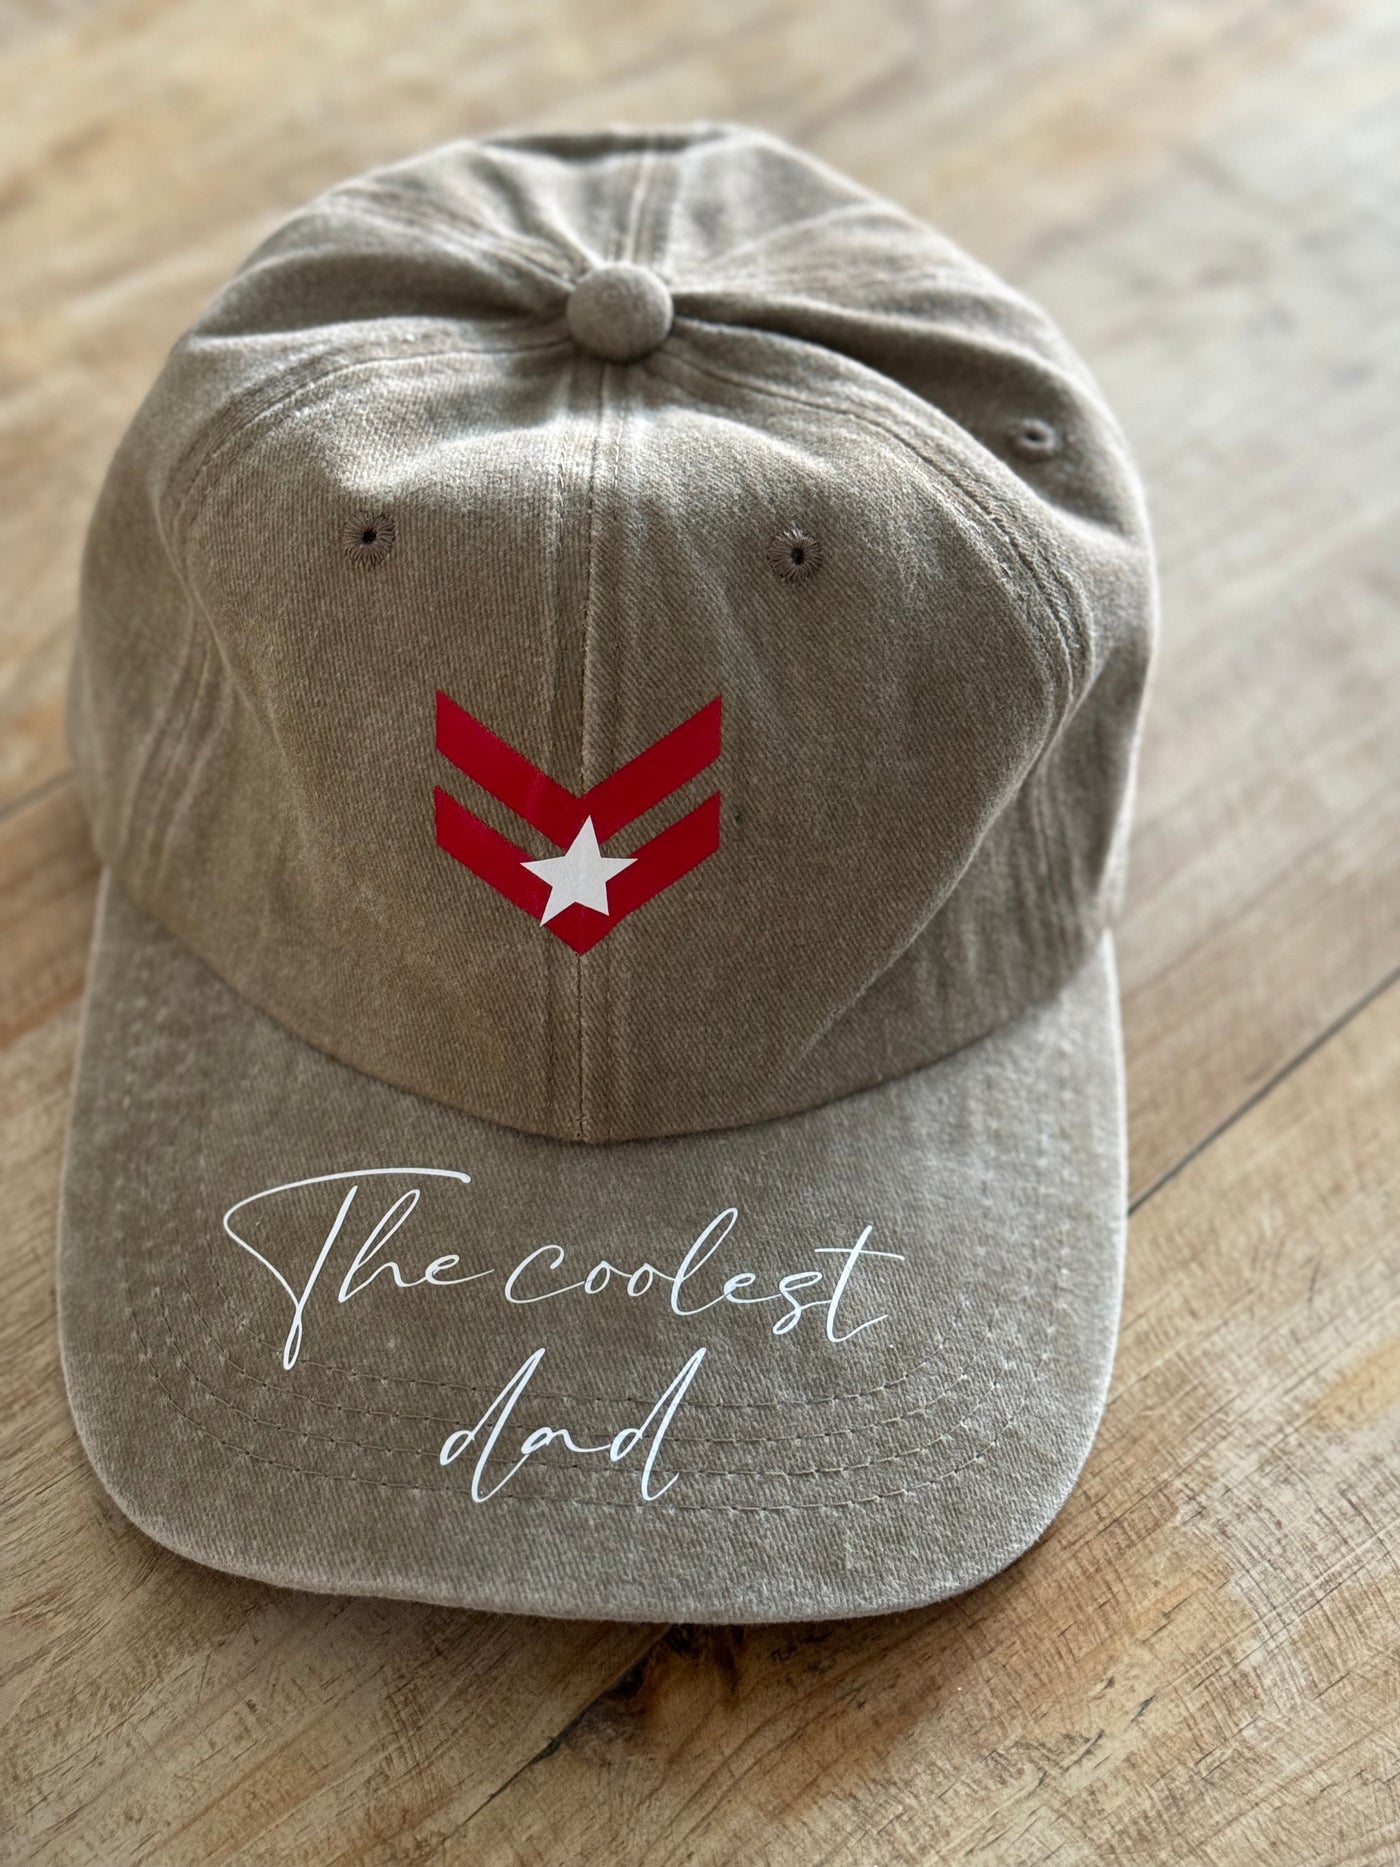 ARMY CAP “especial día del padre”